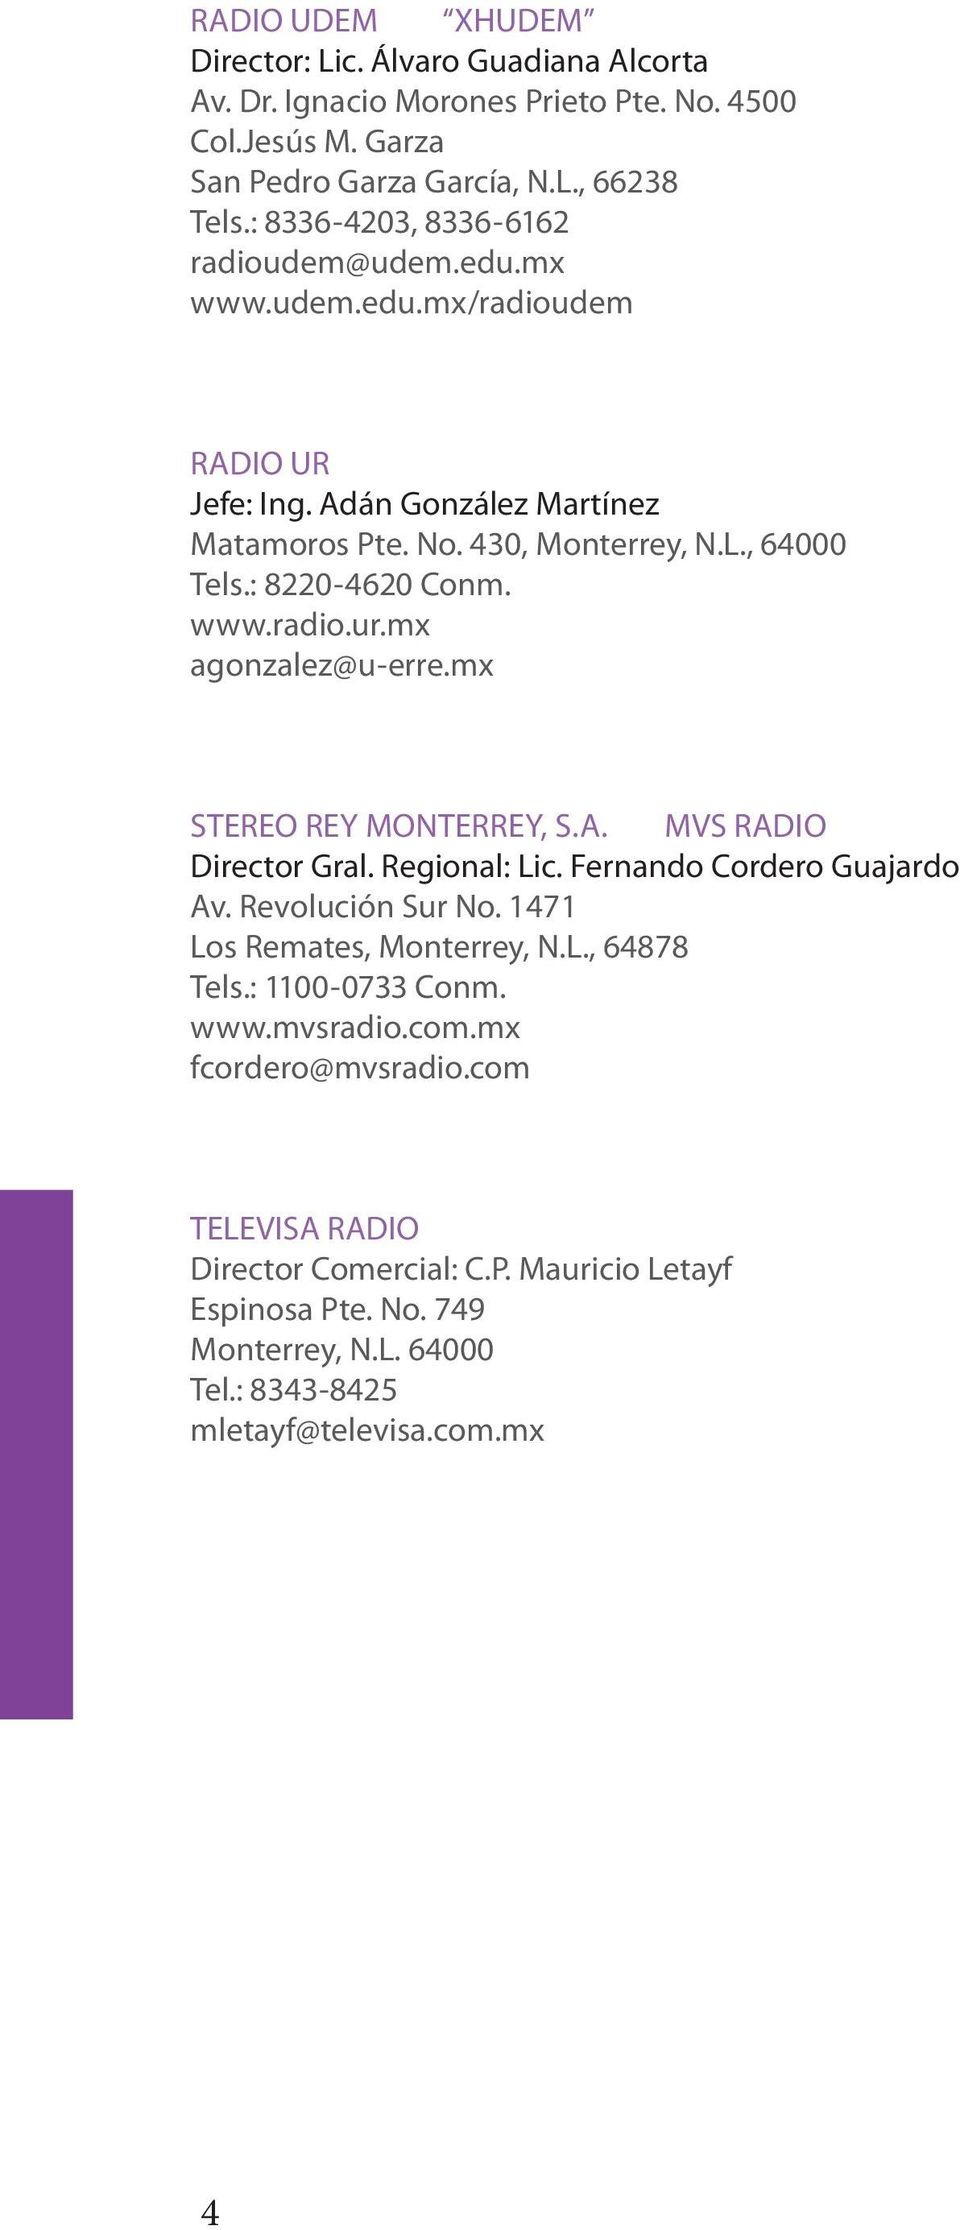 mx agonzalez@u-erre.mx STEREO REY MONTERREY, S.A. MVS RADIO Director Gral. Regional: Lic. Fernando Cordero Guajardo Av. Revolución Sur No. 1471 Los Remates, Monterrey, N.L., 64878 Tels.